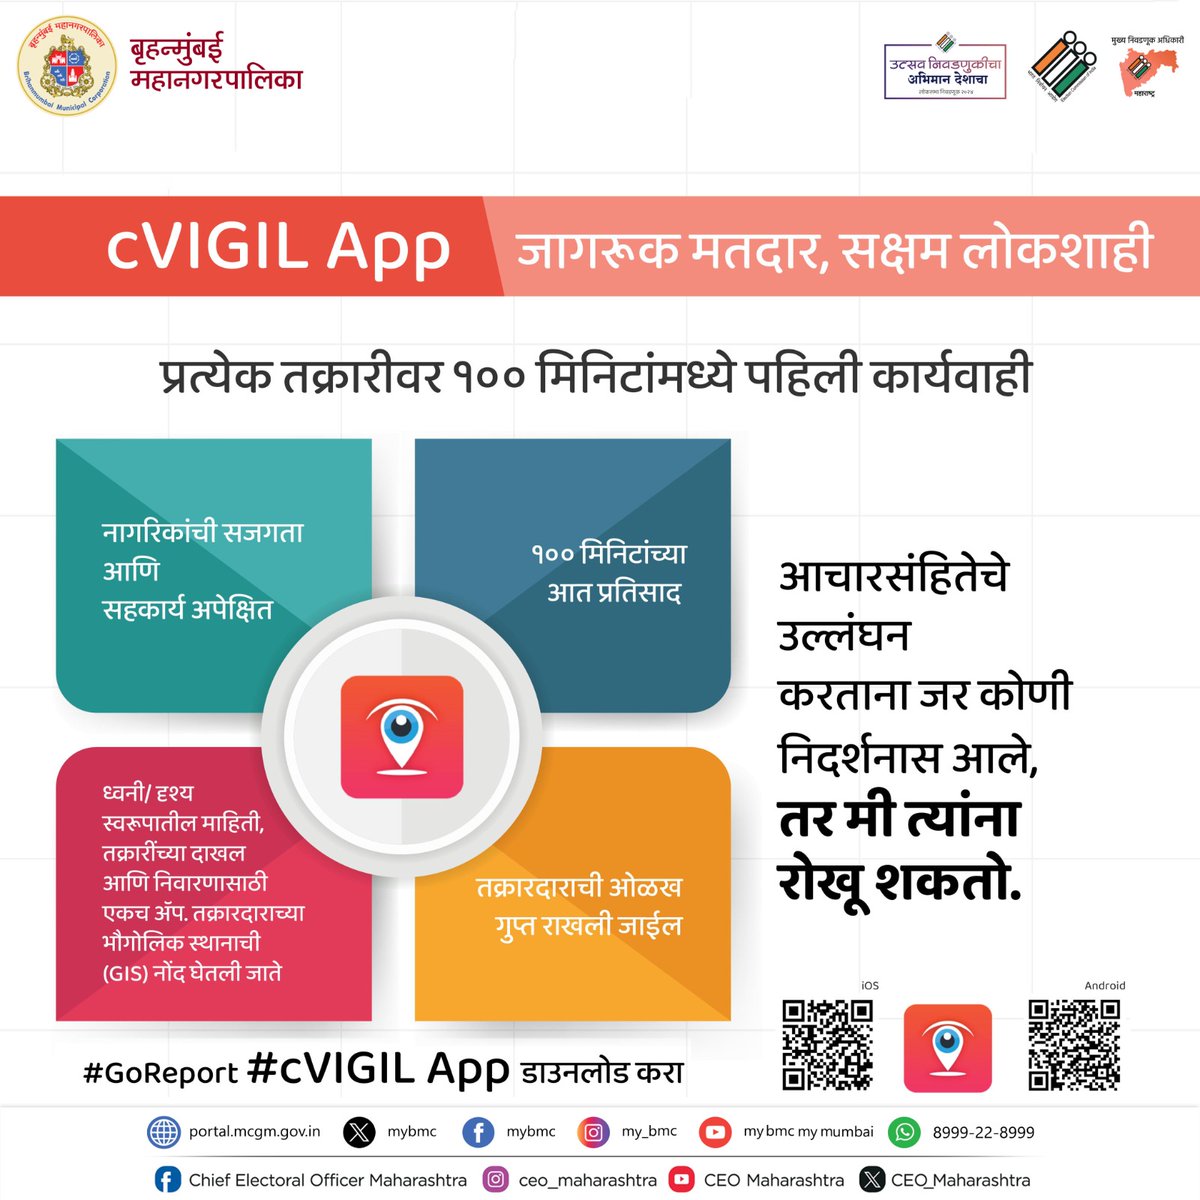 📱cVIGIL App डाऊनलोड करा.

#जागरुकमतदार #सक्षमलोकशाही
#LokSabhaElection2024 
#IVote4Sure 

@ECISVEEP
@CEO_Maharashtra